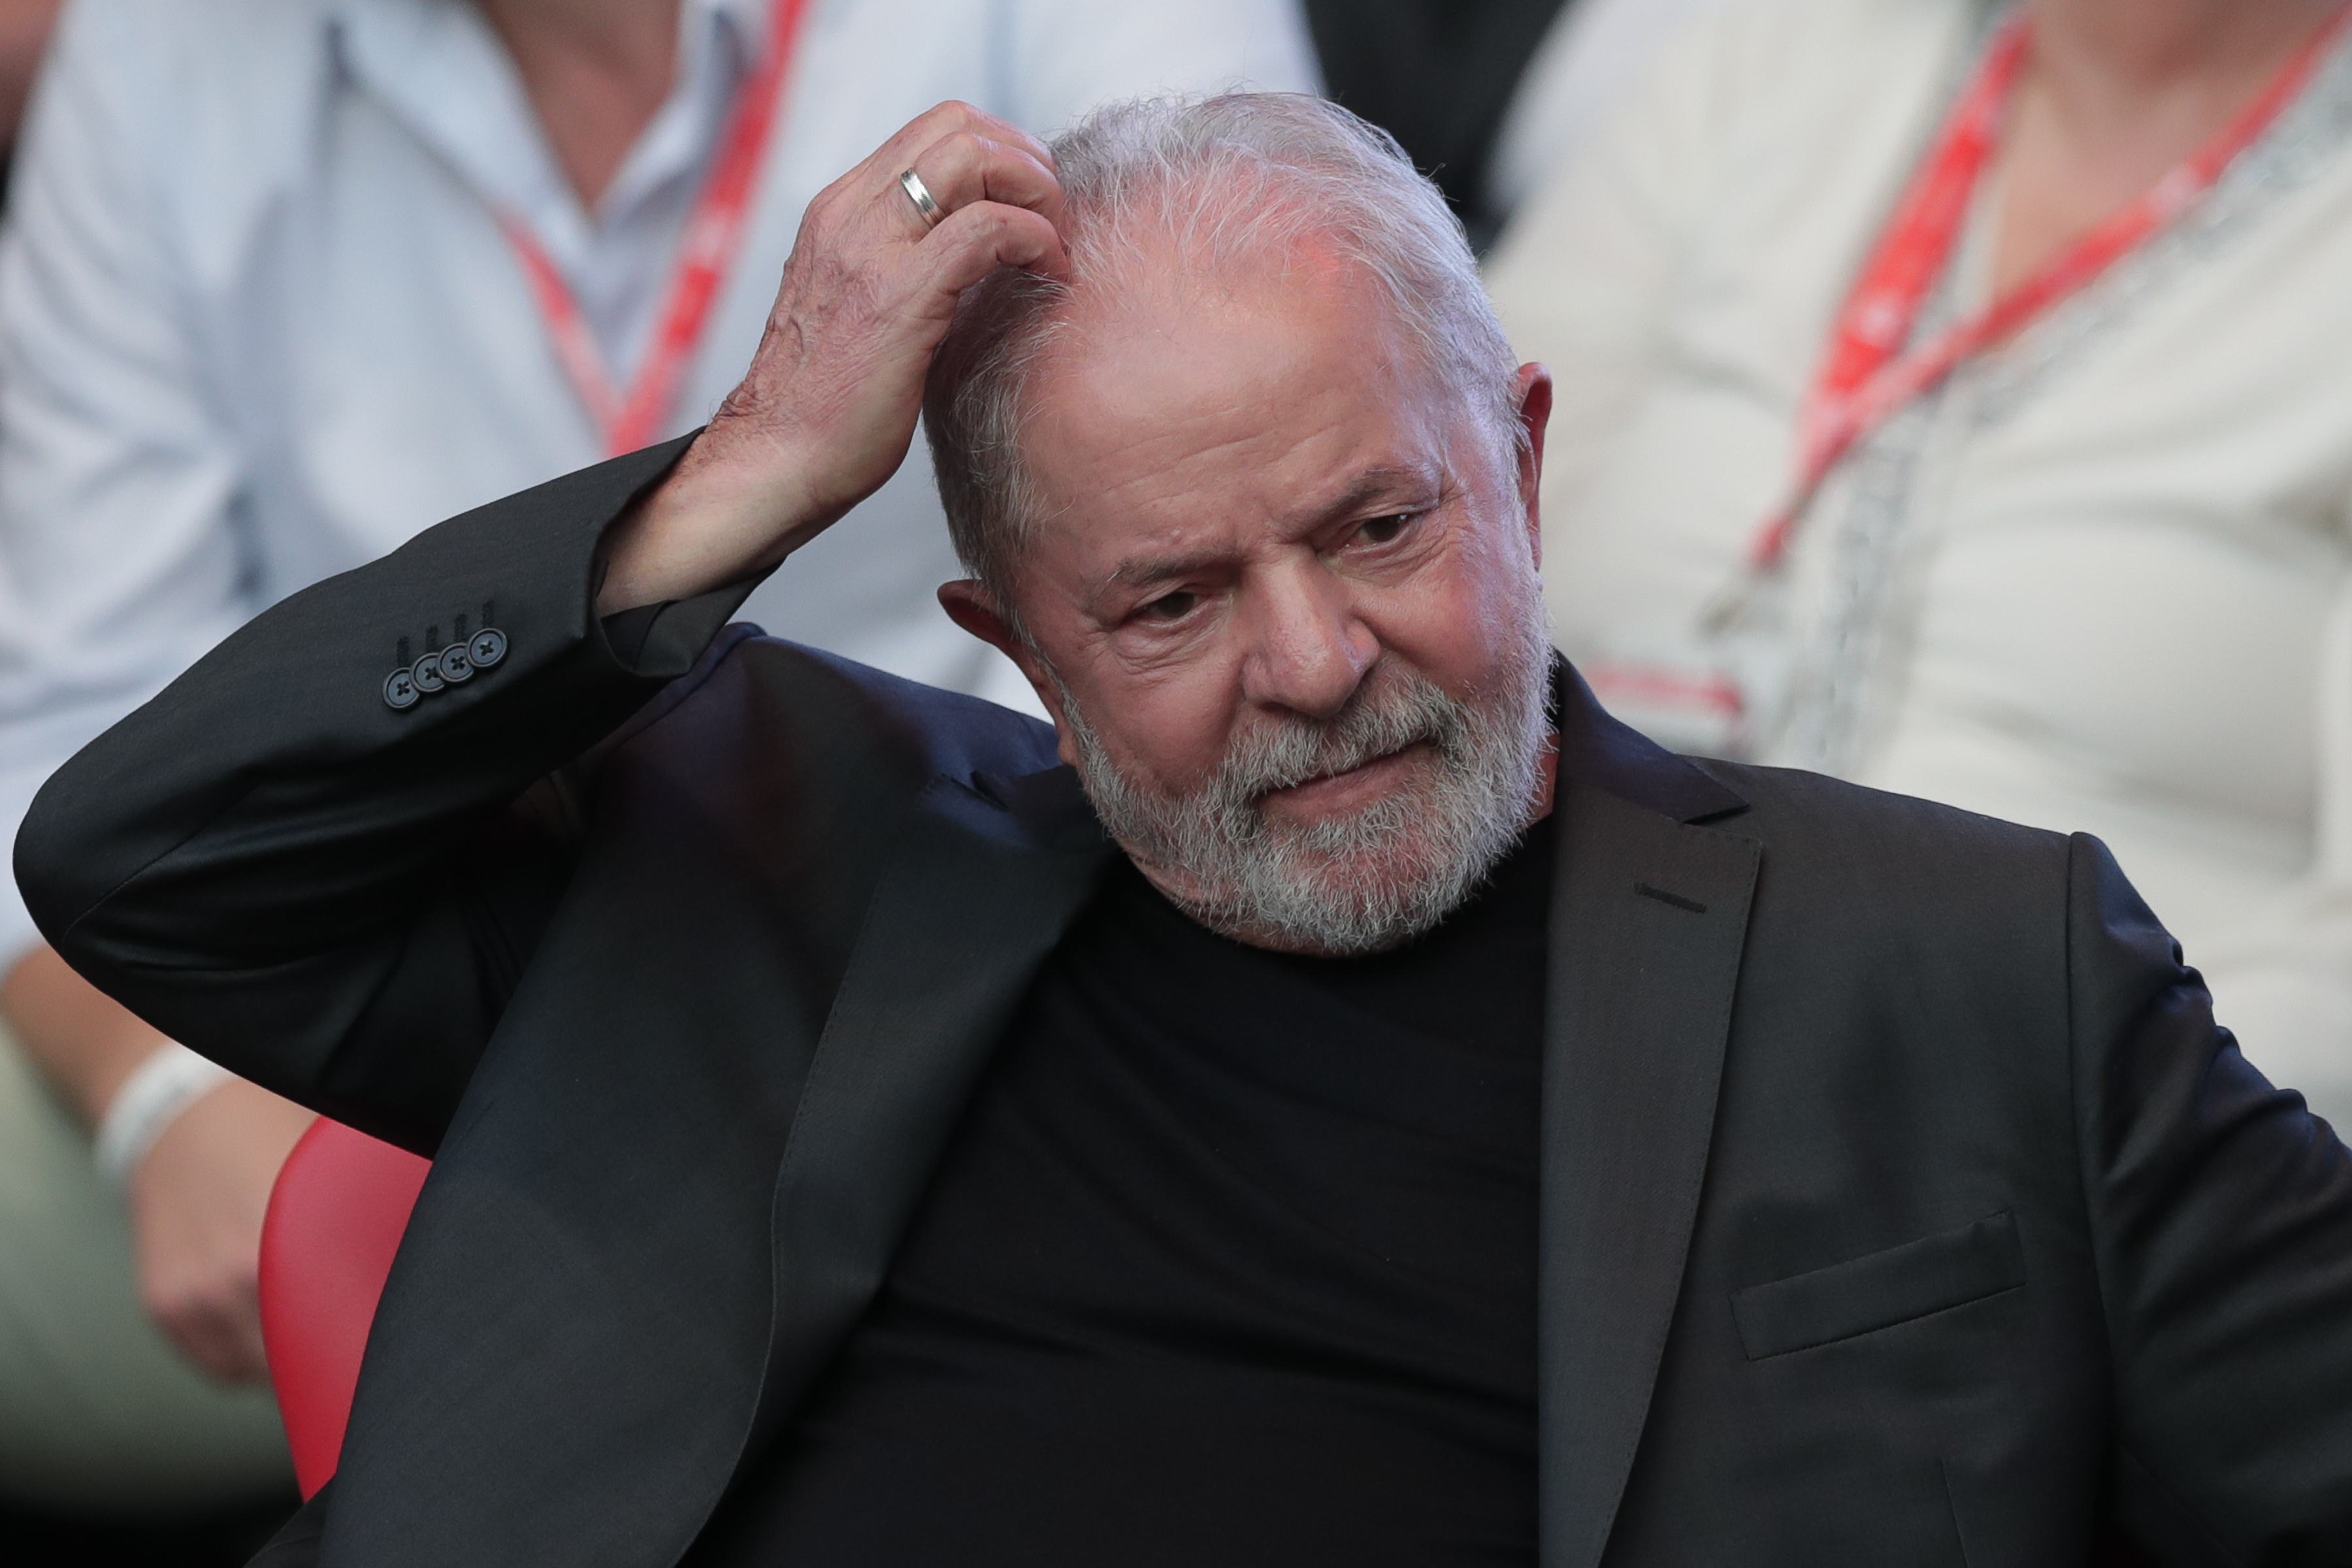 Eleições 2022: Lula sobre Bolsonaro: “Faz questão de ser ogro, ignorante e  de ofender” | VEJA